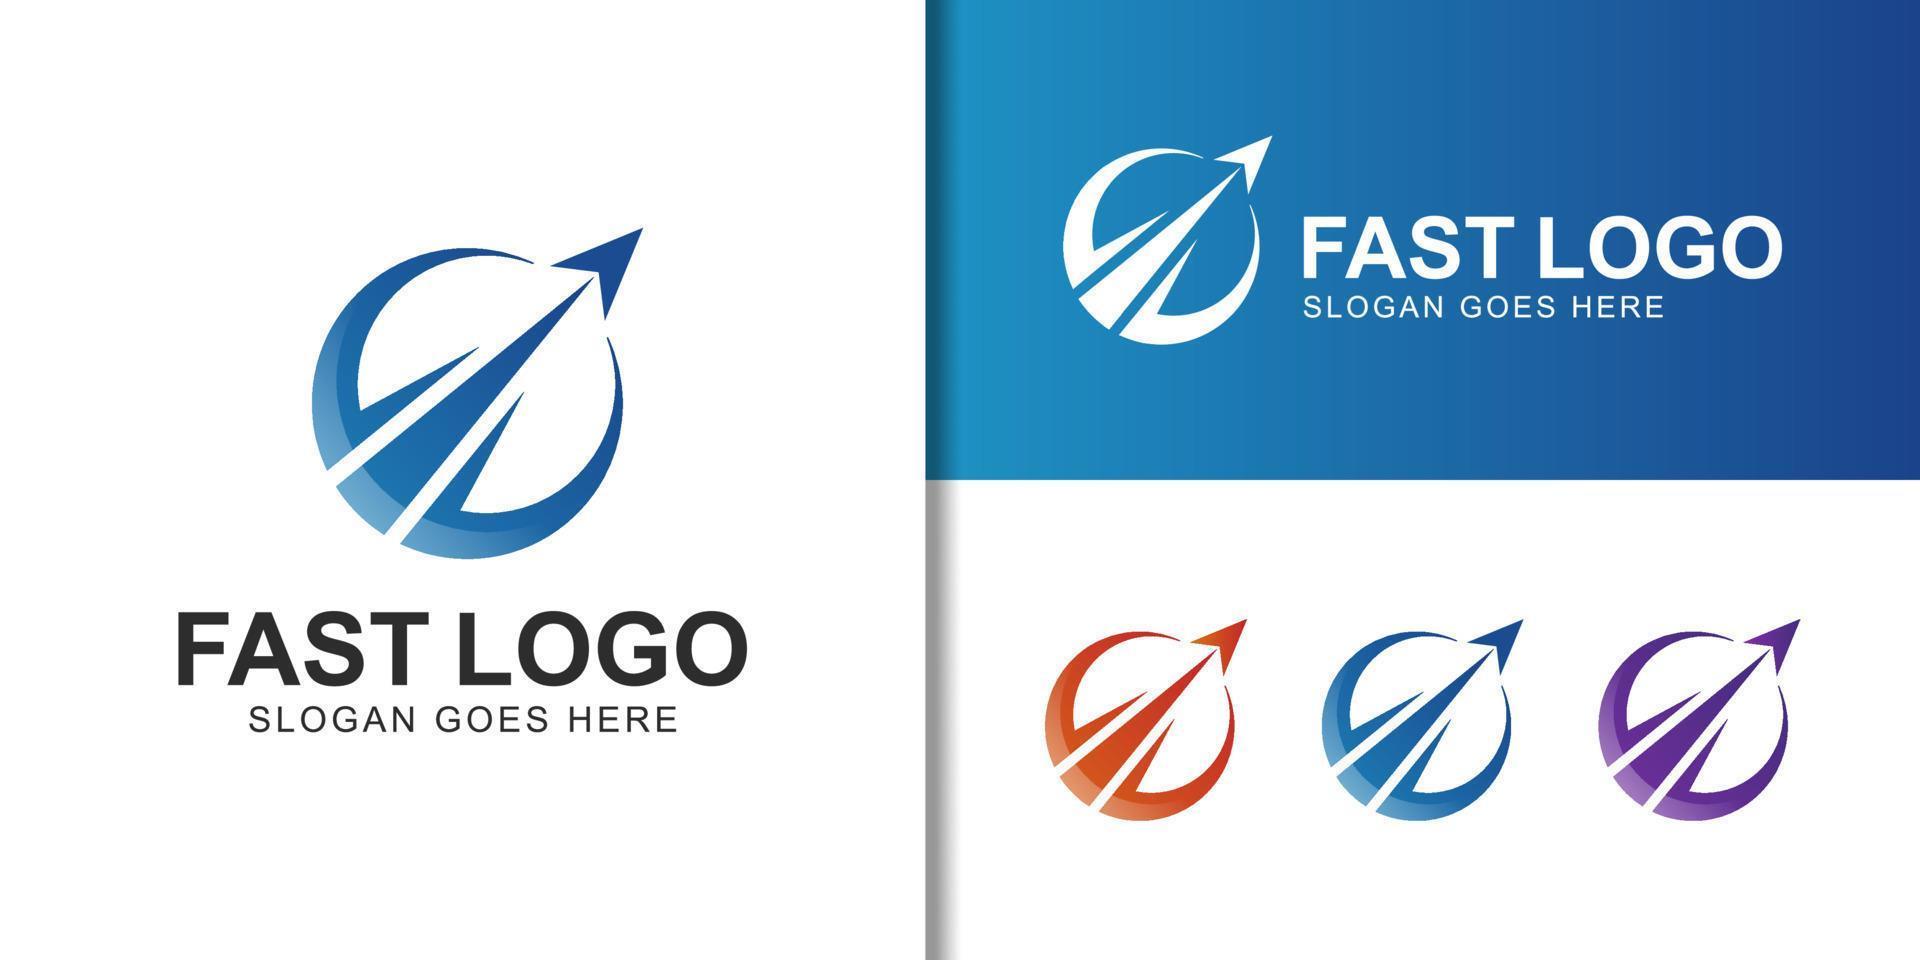 logo d'entreprise de cercle élégant avec logo d'agence de voyage d'affaires de lancement d'avion vecteur